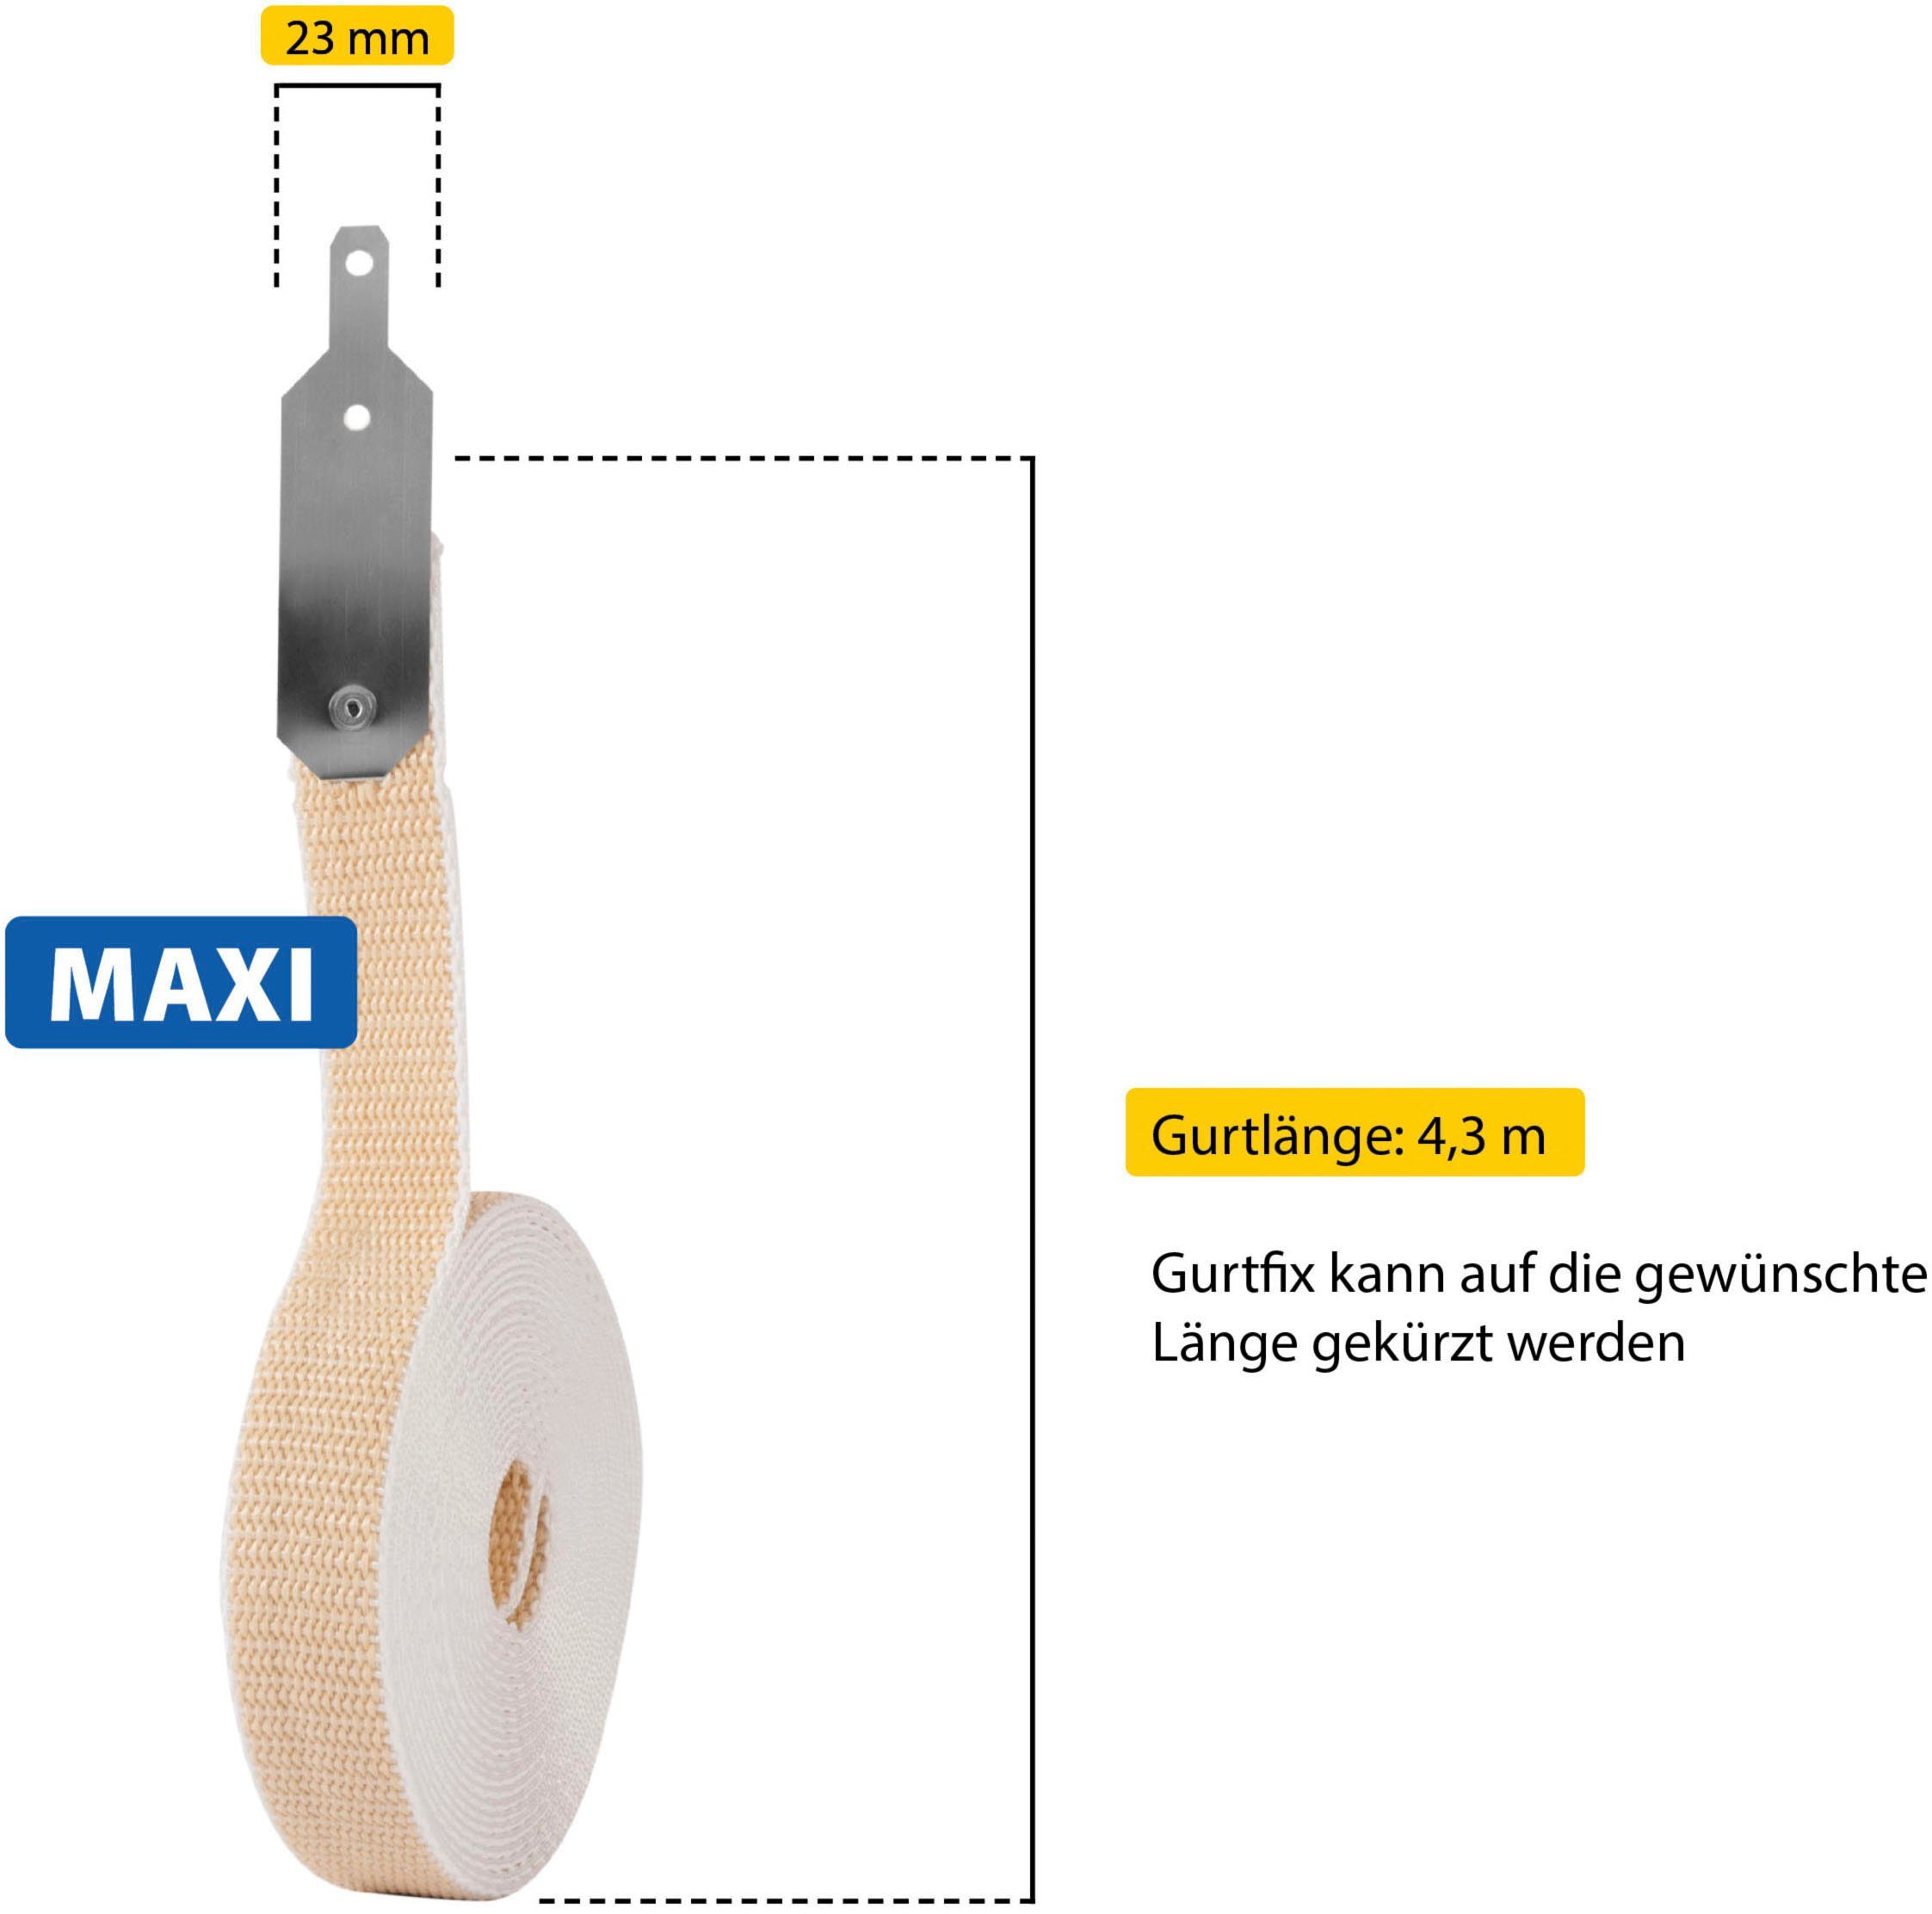 SCHELLENBERG Reparatur-Set GURTFIX Maxi, Gurtbänder, 23 1-St., mm, alte für verschlissene oder beige